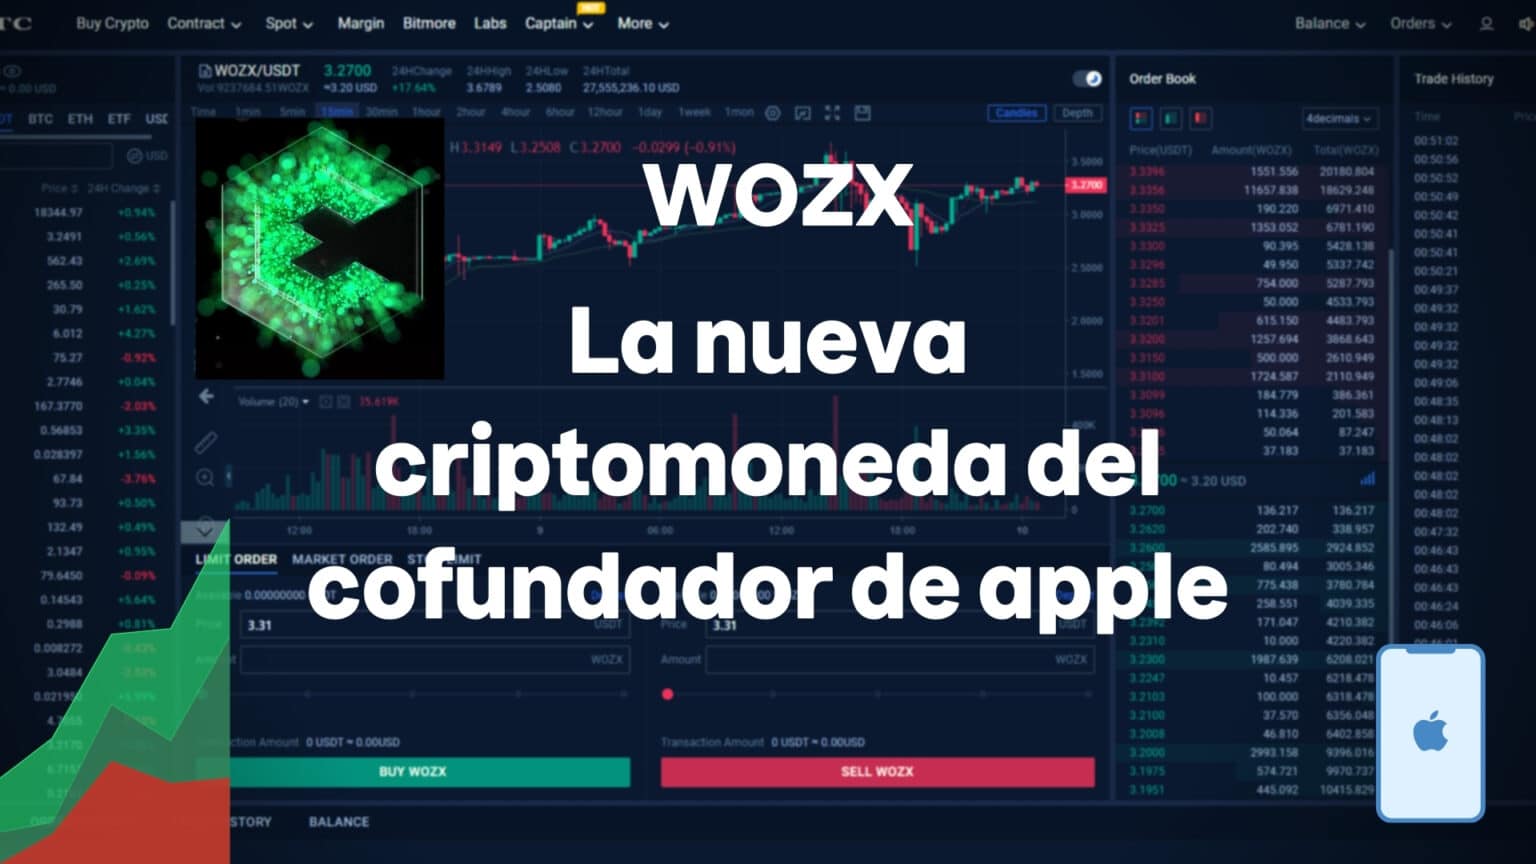 wozx stock